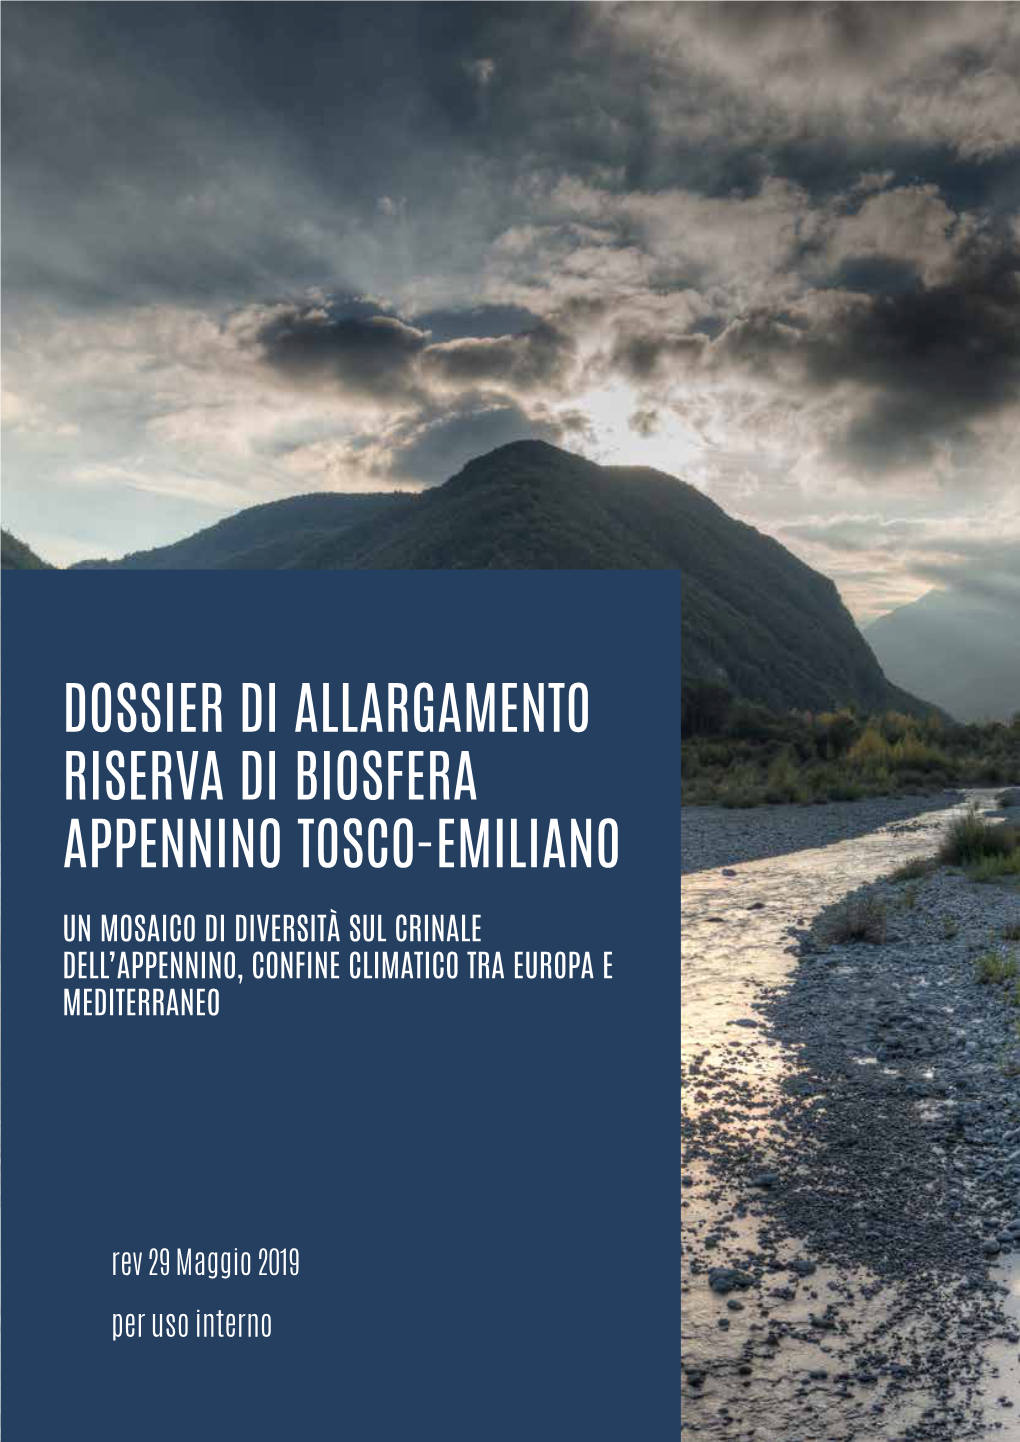 Dossier Di Allargamento Riserva Di Biosfera Appennino Tosco-Emiliano